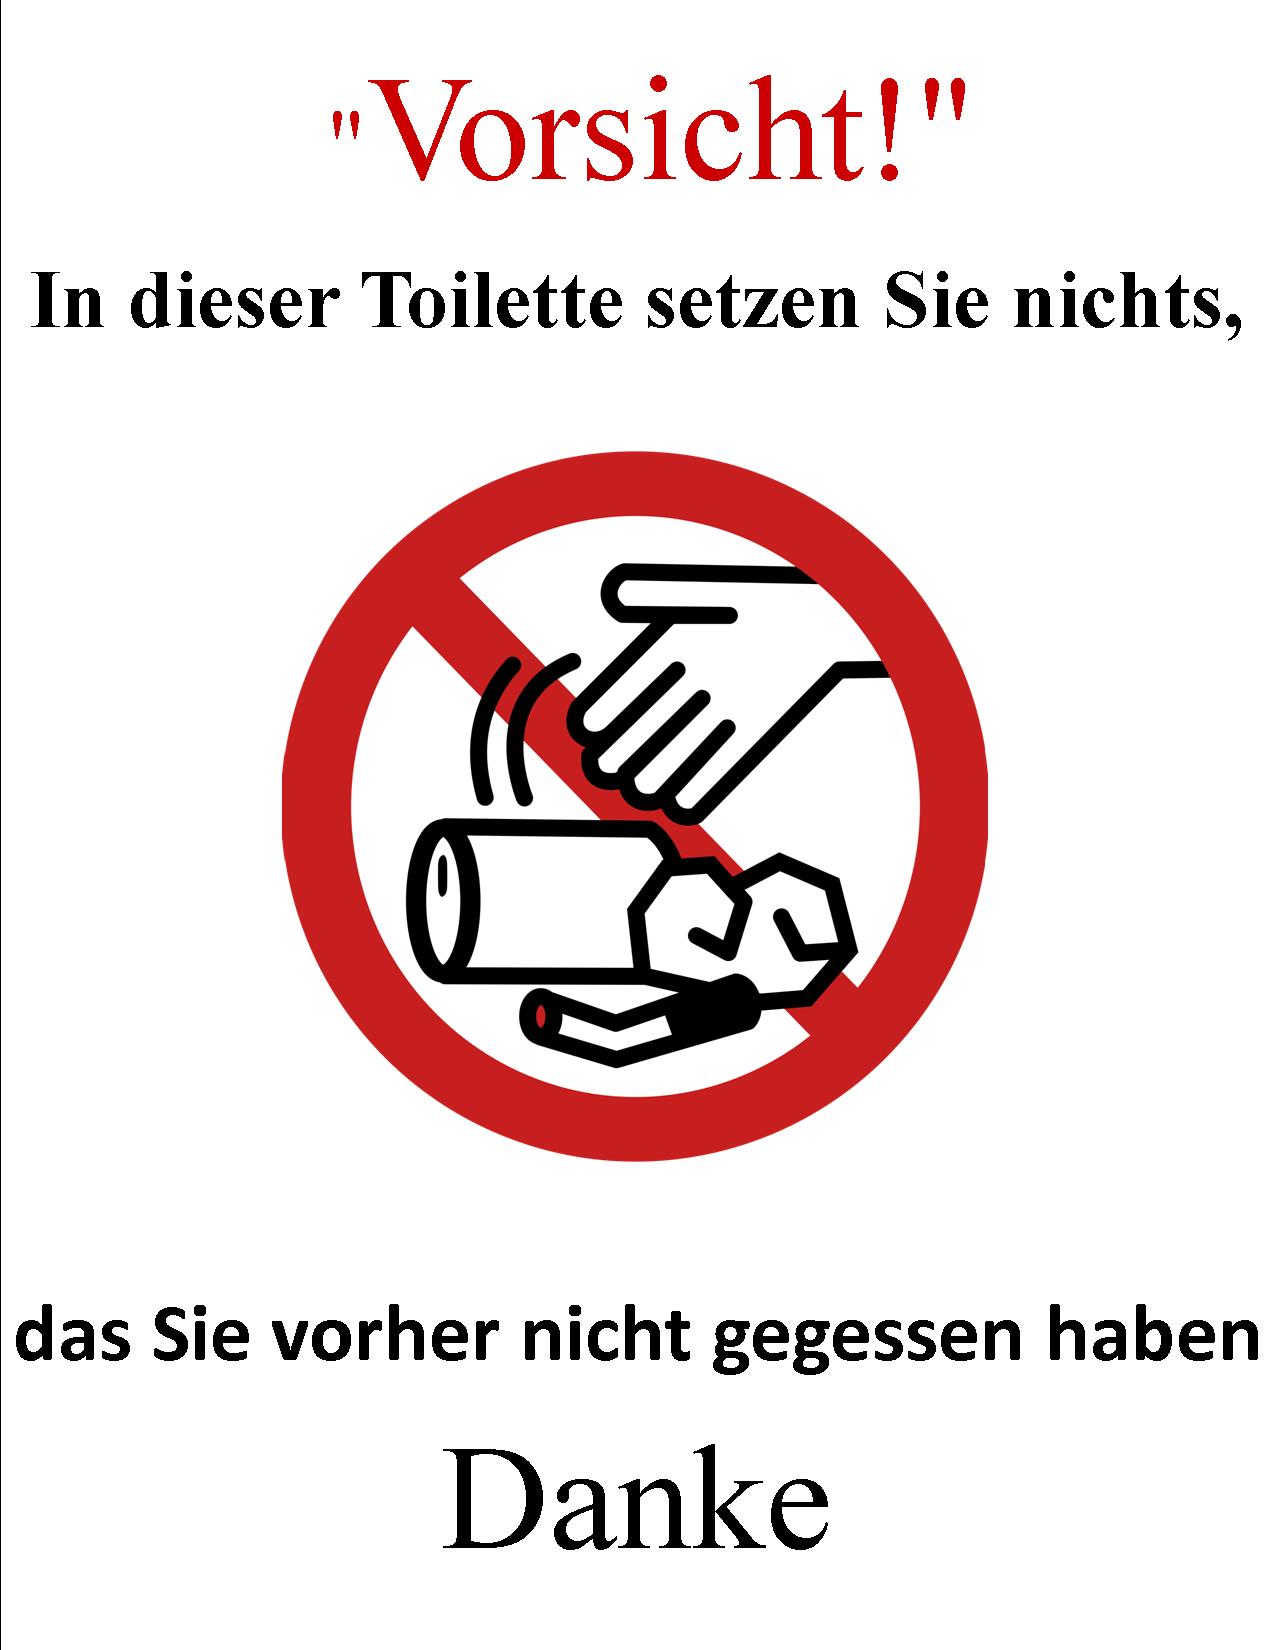 toilet sign.jpg